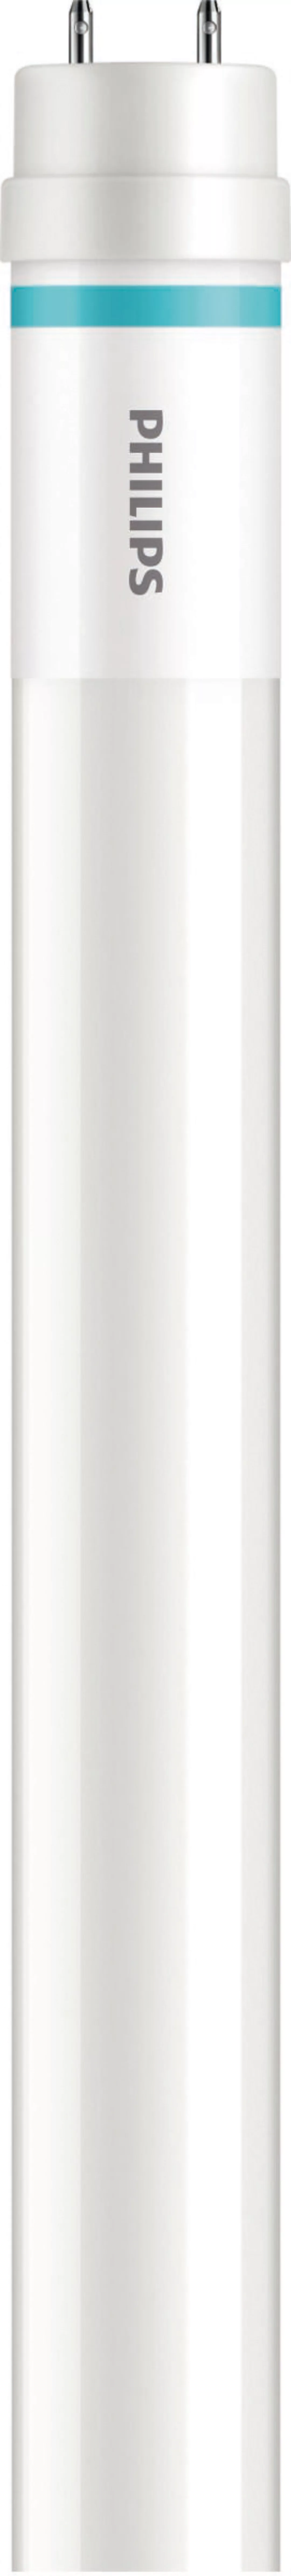 Philips Lighting LED-Tube T8 f. KVG/VVG G13, 830, 1500mm MASLEDtube #316867 günstig online kaufen